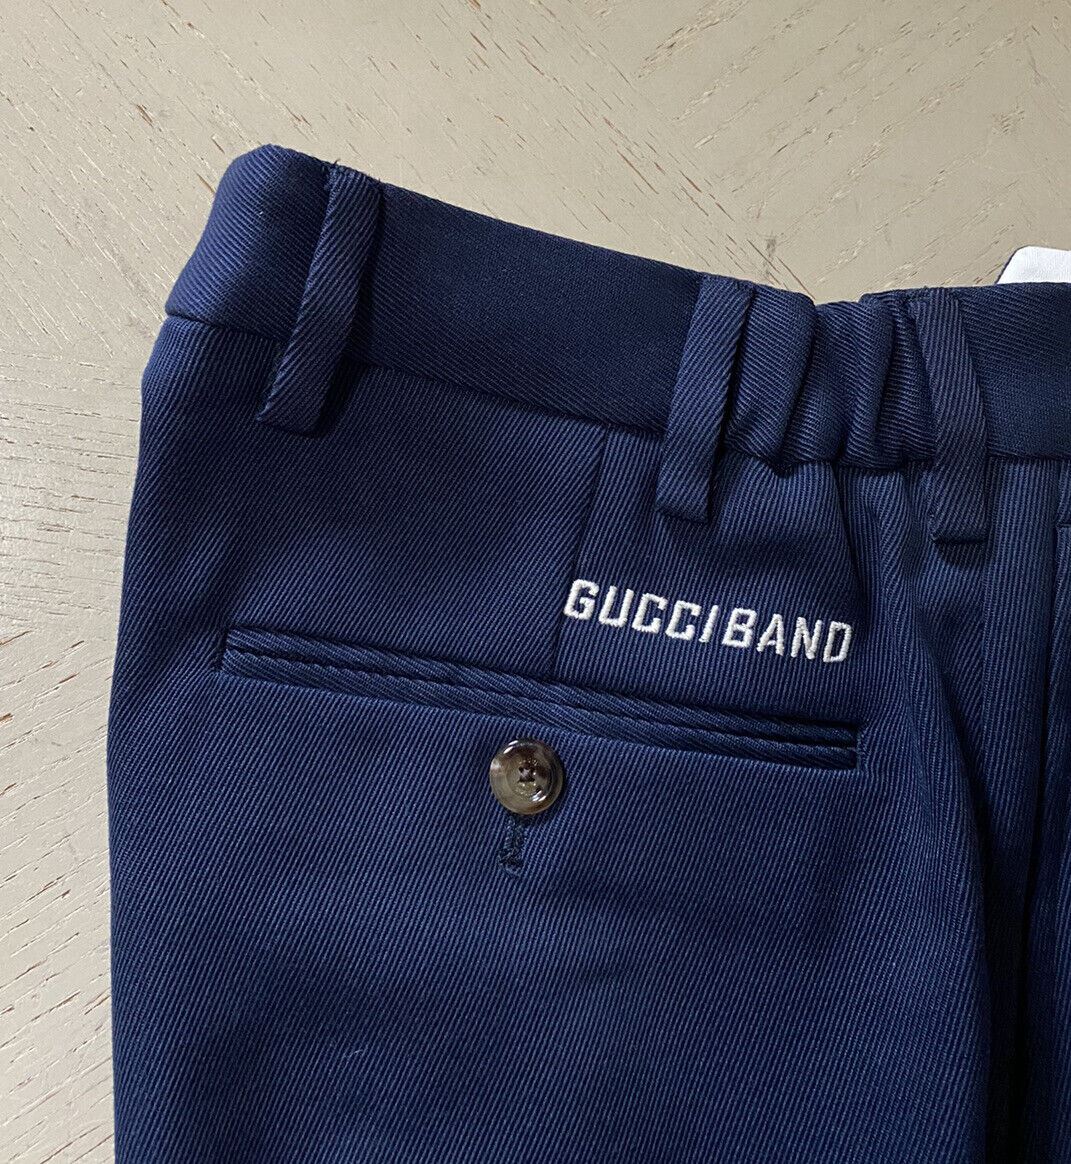 Neu mit Etikett: 1100 $ Gucci Herren Gucci Band Hose Blau/Kaspian 30 US (46 Eu) Italien